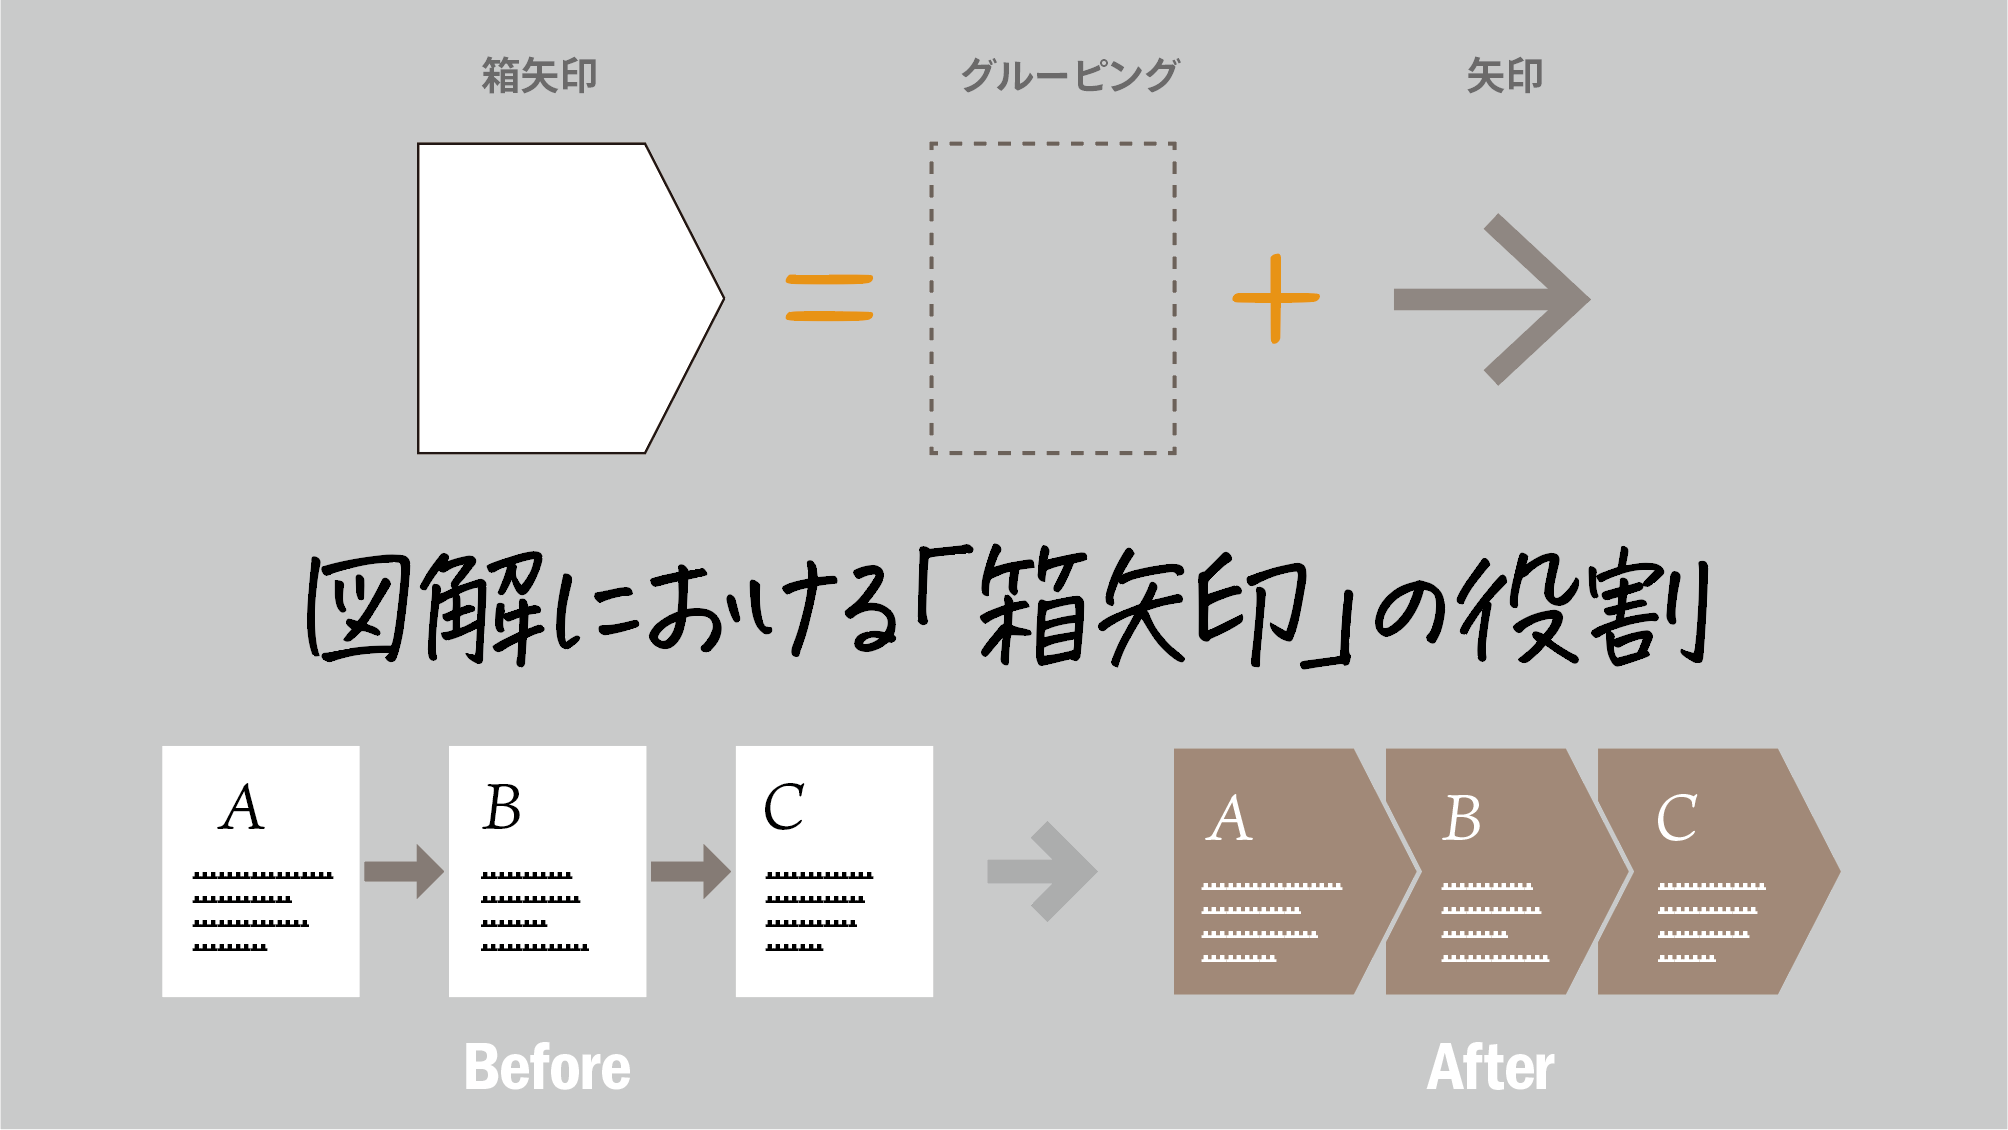 鷹野 雅弘 Masahiro Takano 箱矢印 グルーピング 矢印 箱矢印は 要素のグルーピングと グルーピングされたものの変化や工程を示します 矢印でつなぐのに省スペースで かつ 変化 工程 を表現しやすいという利点があります 図解の基本